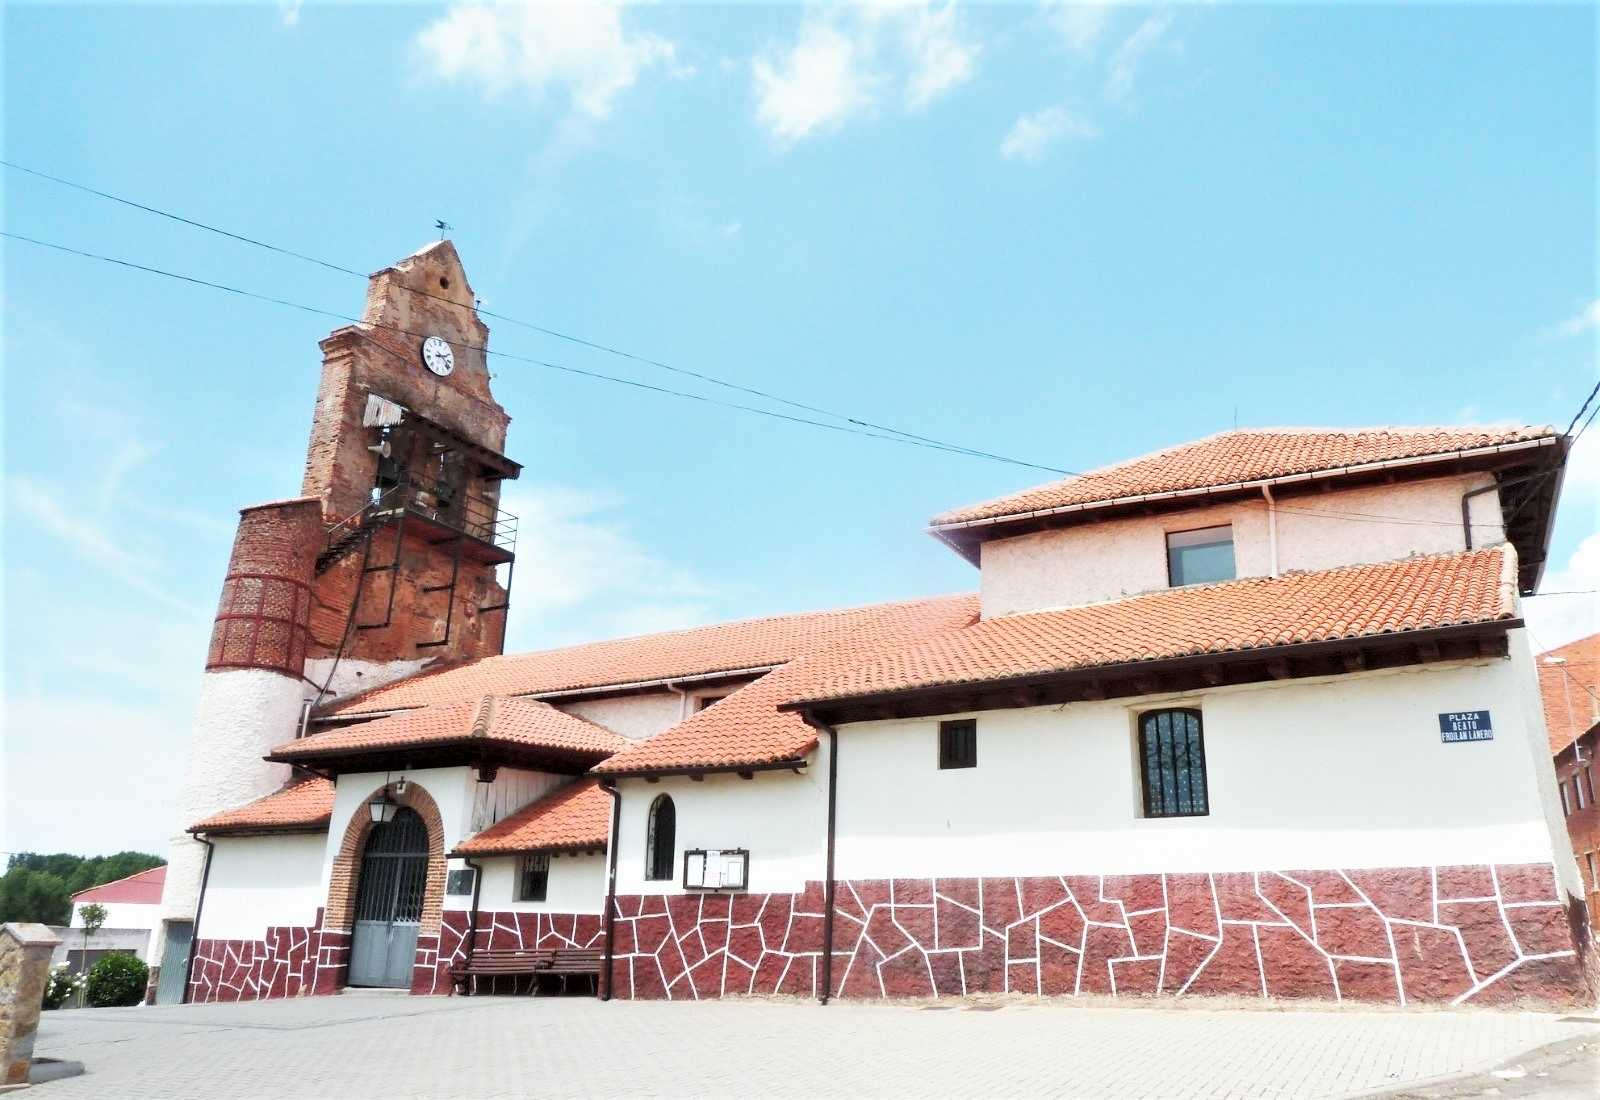 Ayuntamiento de Villadangos del Páramo